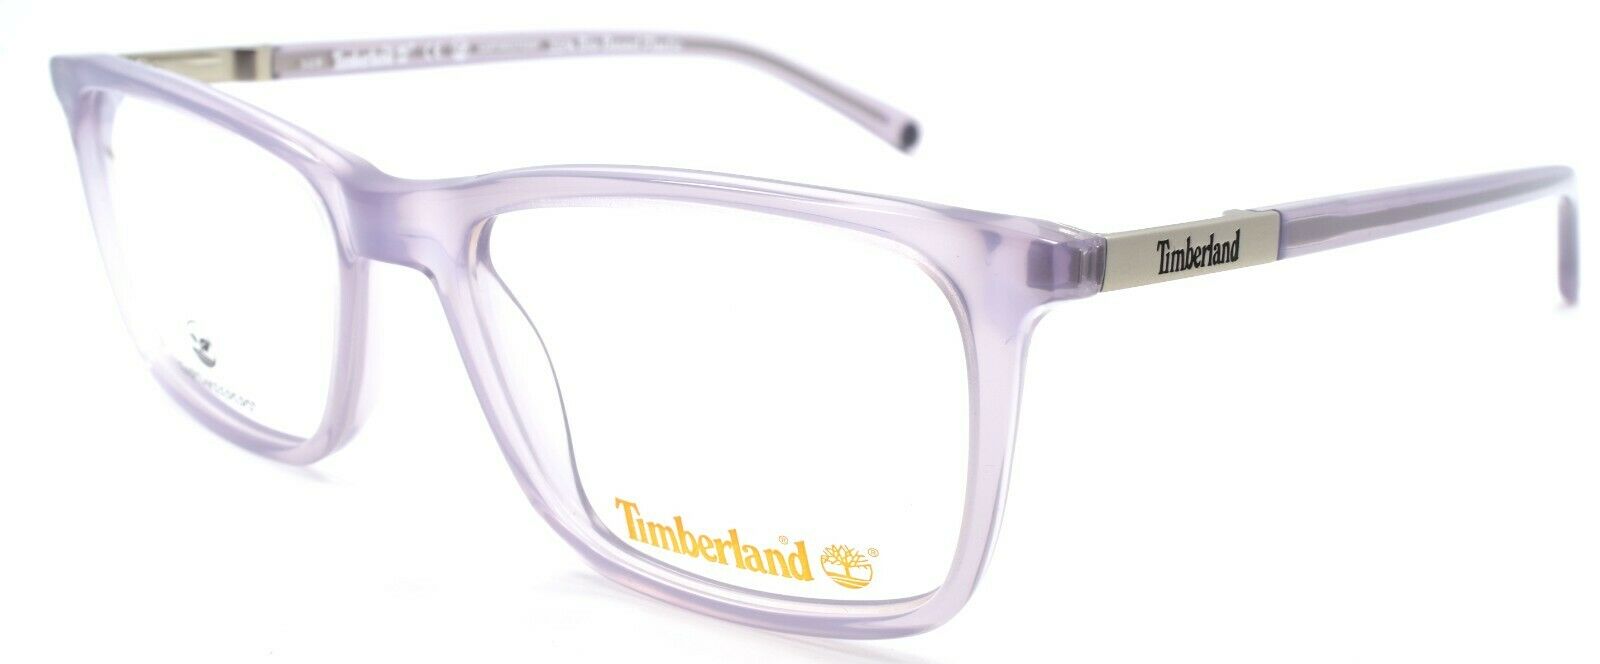 1-TIMBERLAND TB1619 020 Men's Eyeglasses Frames 50-17-145 Violet-889214126955-IKSpecs